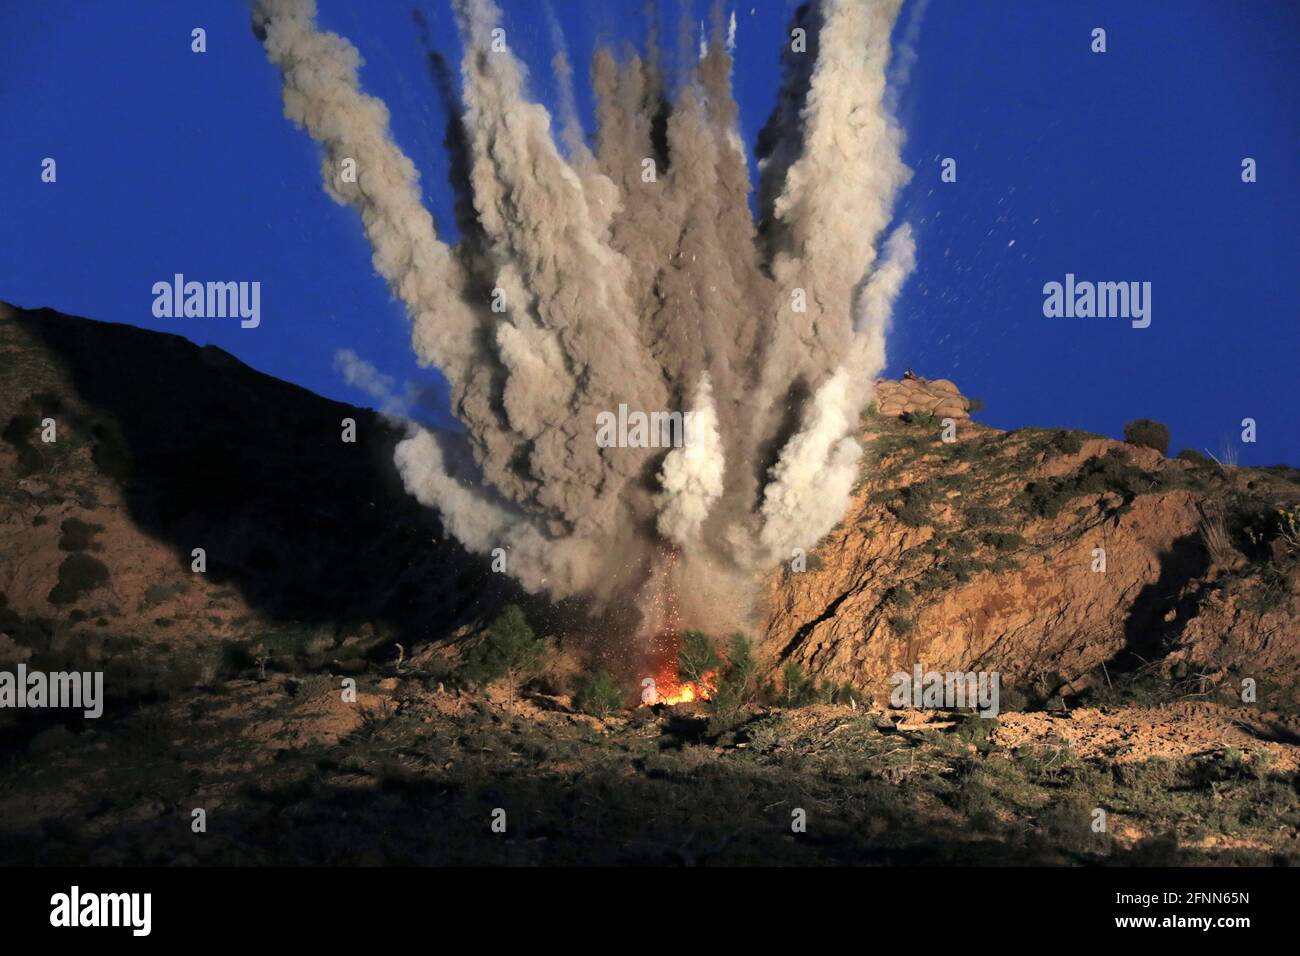 Bomba De Humo En La Mano Contra El Cielo Foto de archivo - Imagen de  vacaciones, humo: 171282770